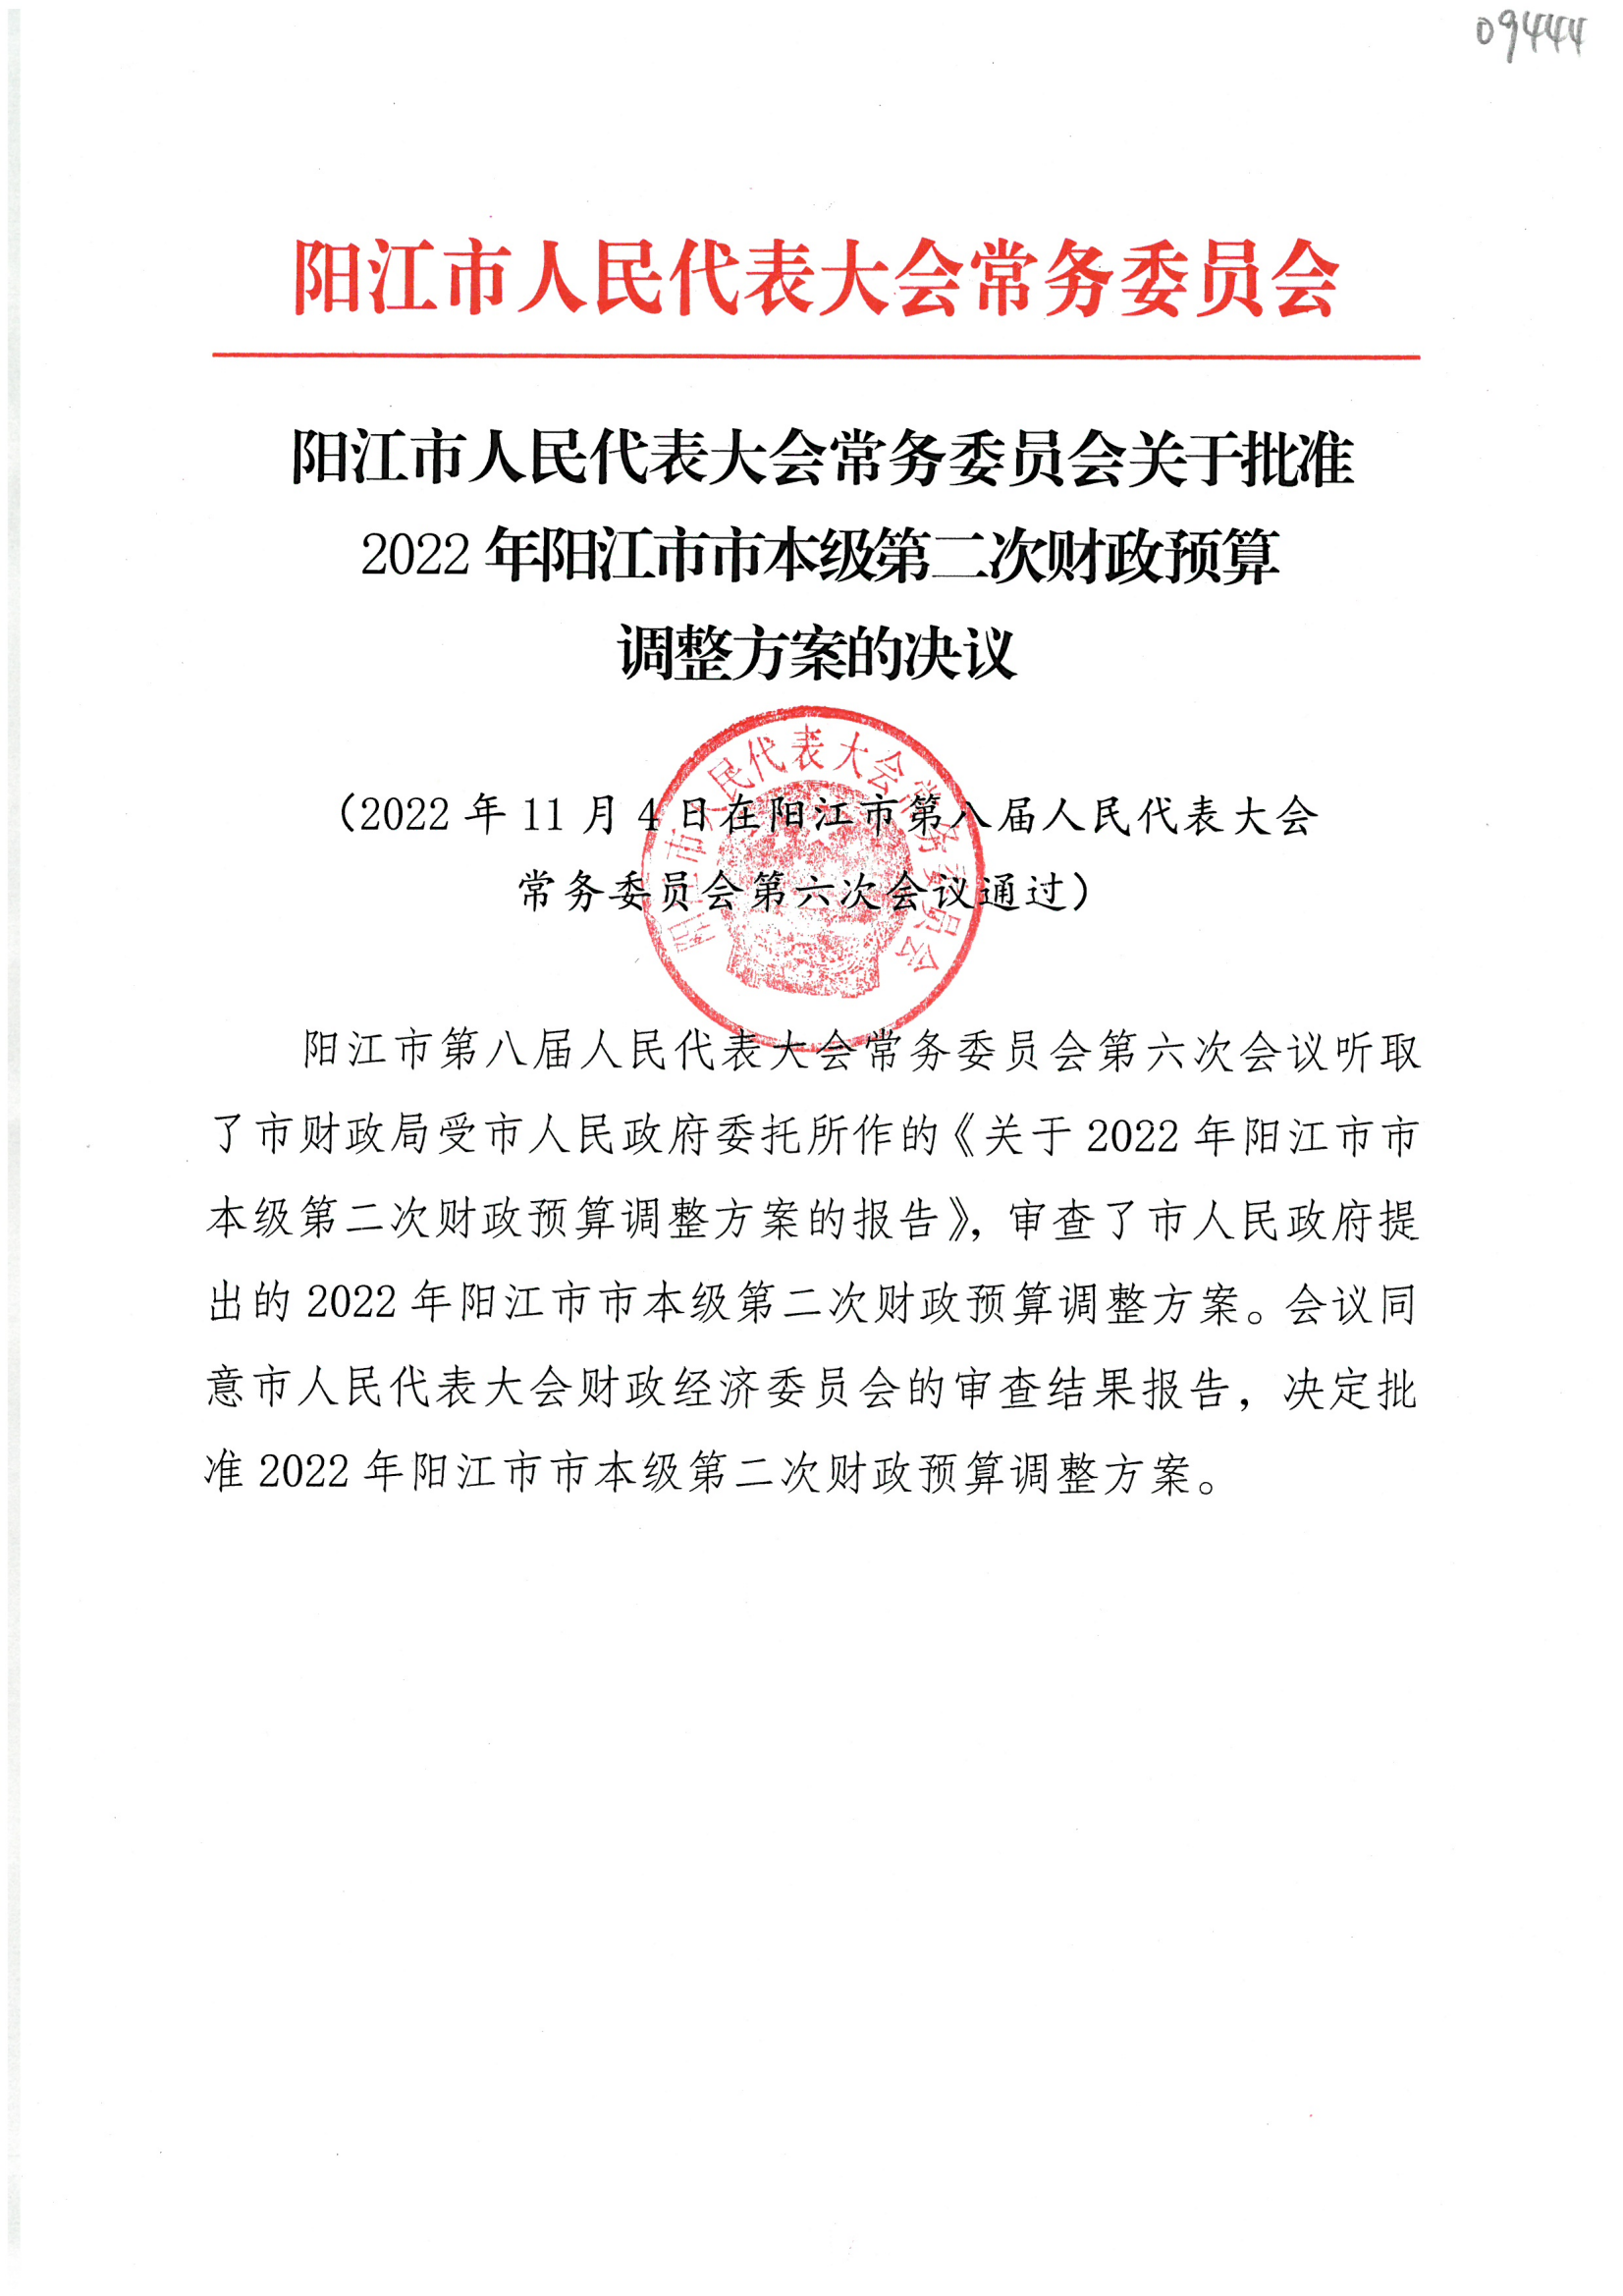 阳江市人民代表大会常务委员会关于批准2022年阳江市市本级第二次财政预算调整方案的决议_00.png